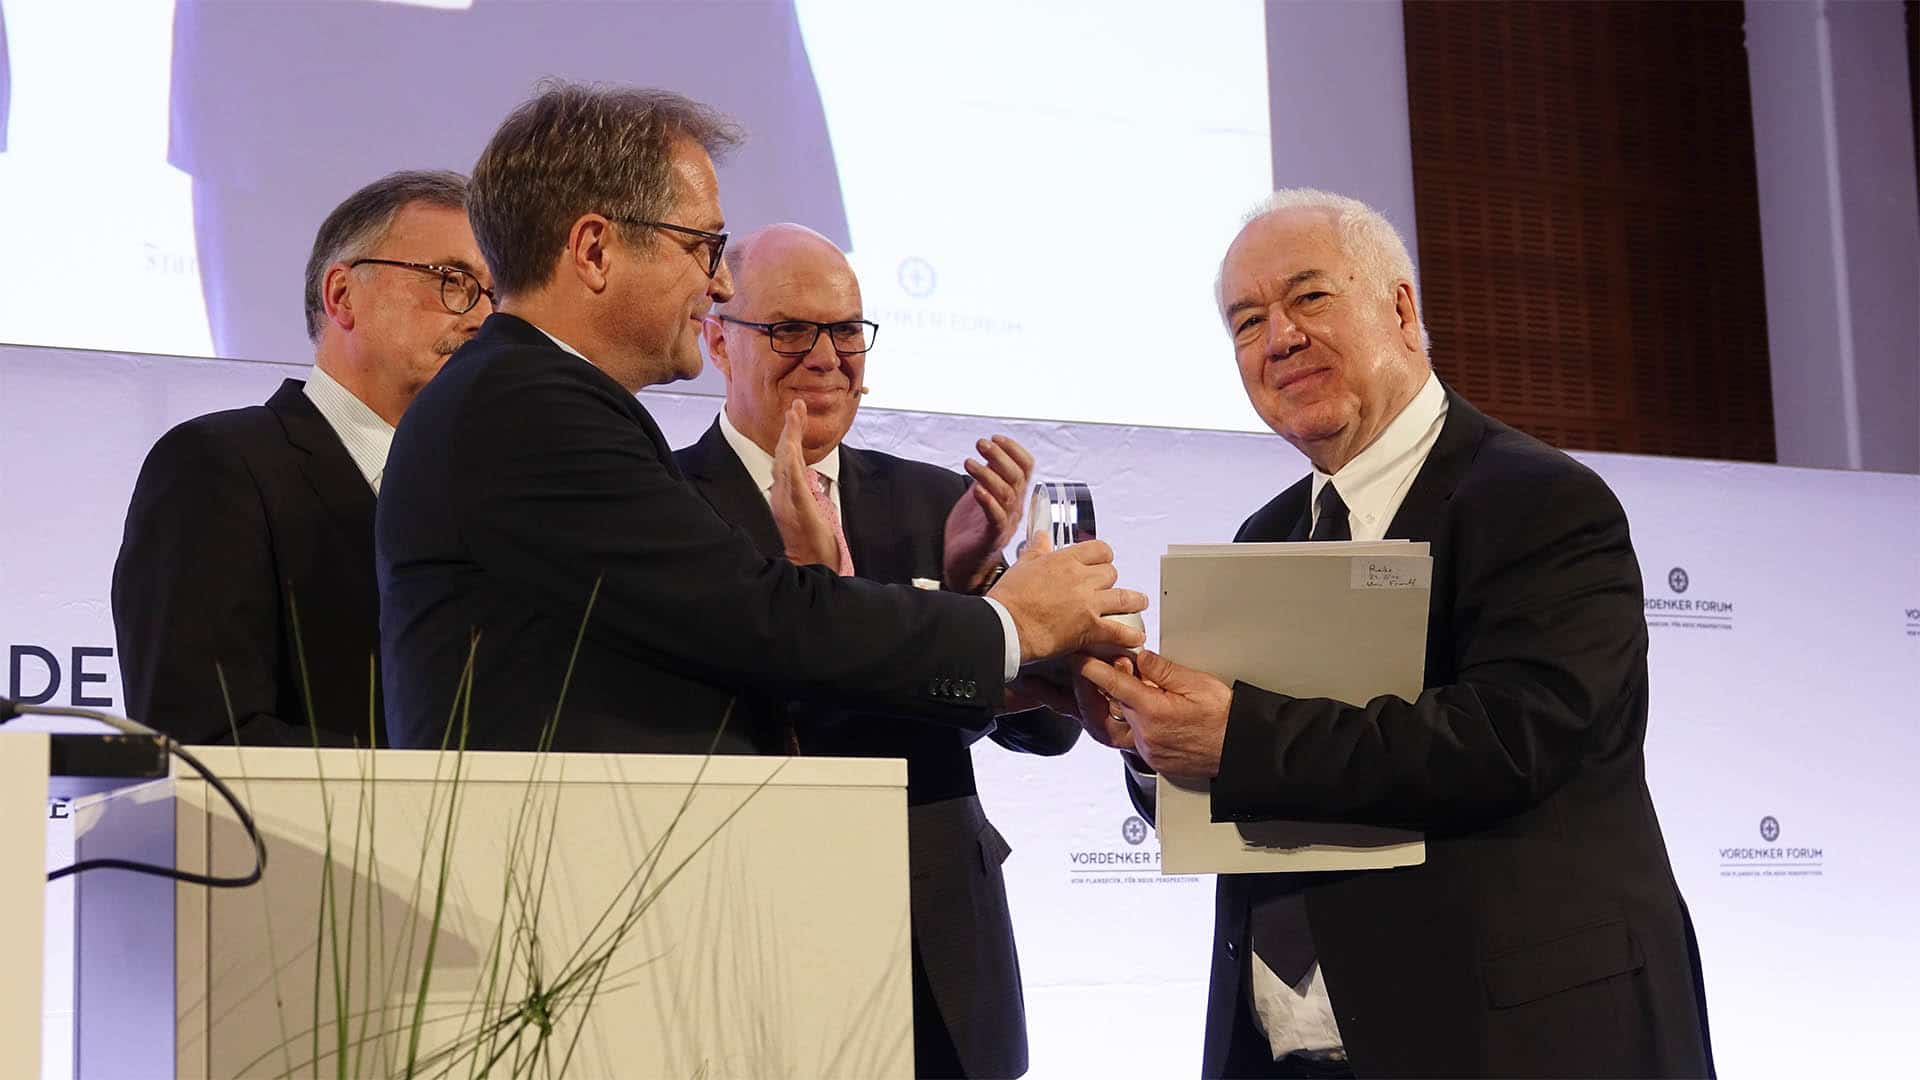 Der Politikwissenschaftler Bassam Tibi bekam am Donnerstag in der Goethe-Universität in Frankfurt am Main den „Vordenker-Preis“ des Finanzberaters Plansecur überreicht